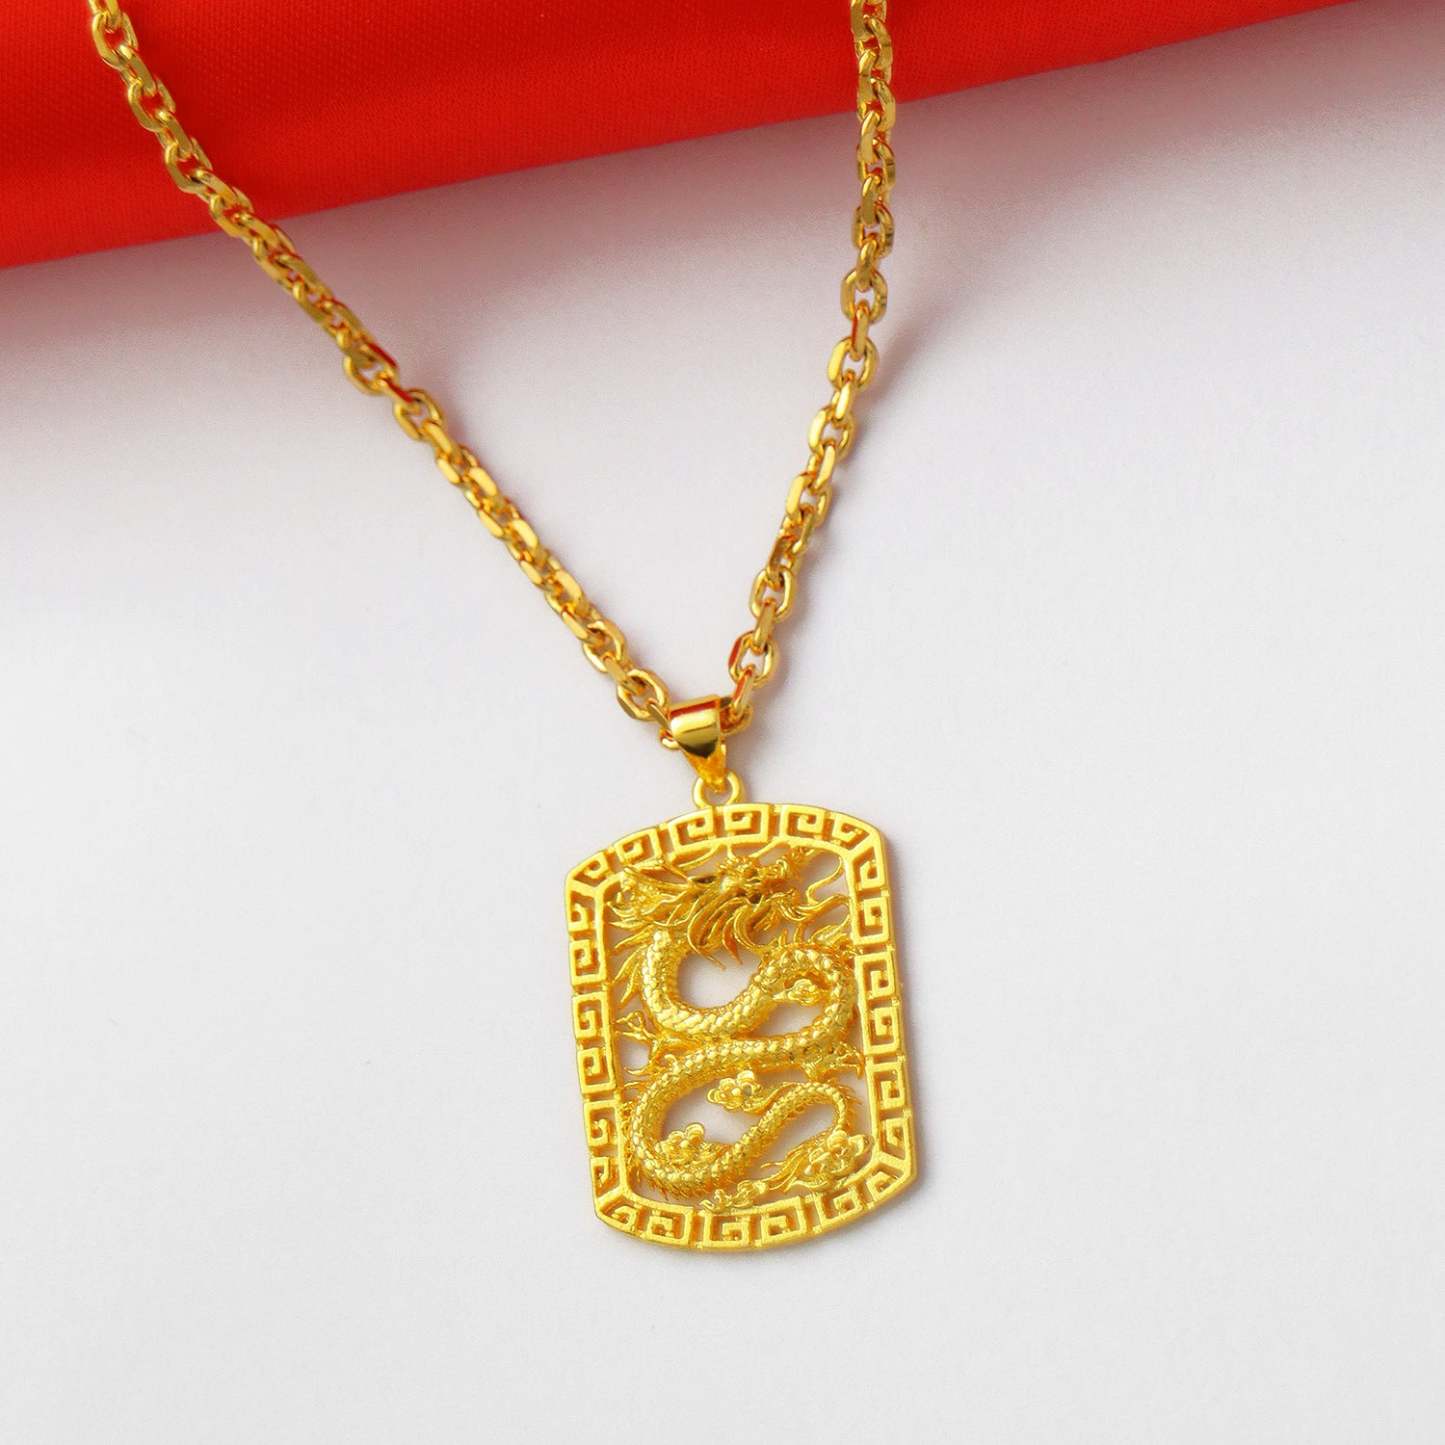 Domineering Golden Dragon Necklace Hip-hop Trendy Men's Jewelry - soufeelmy